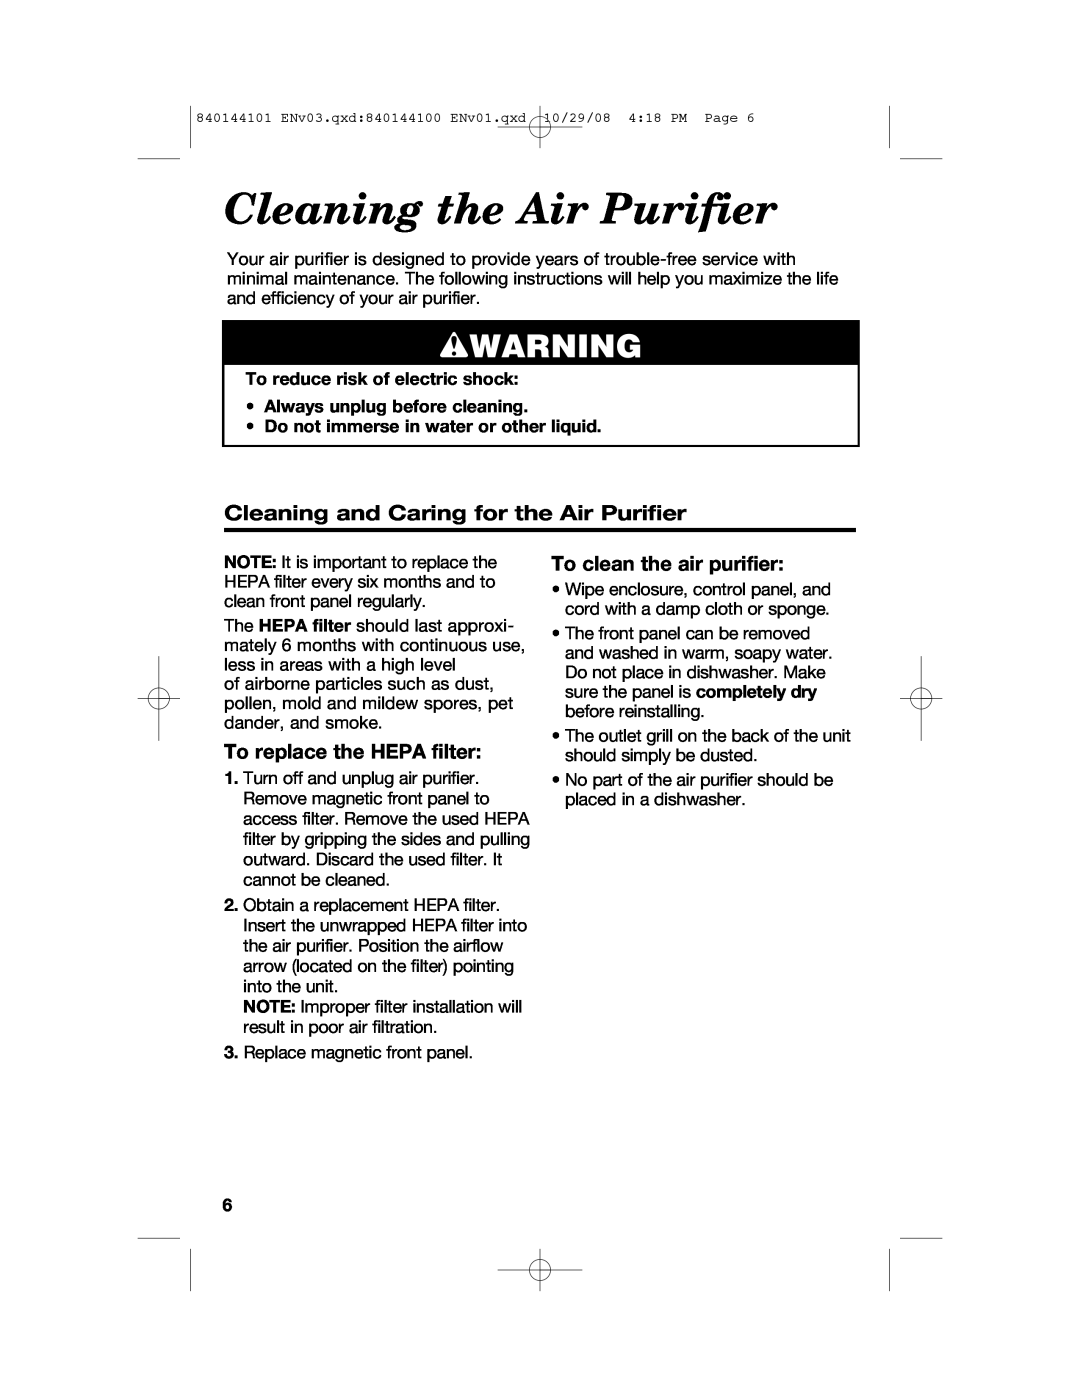 Hamilton Beach 840144101 manual Cleaning the Air Purifier, wWARNING, Cleaning and Caring for the Air Purifier 